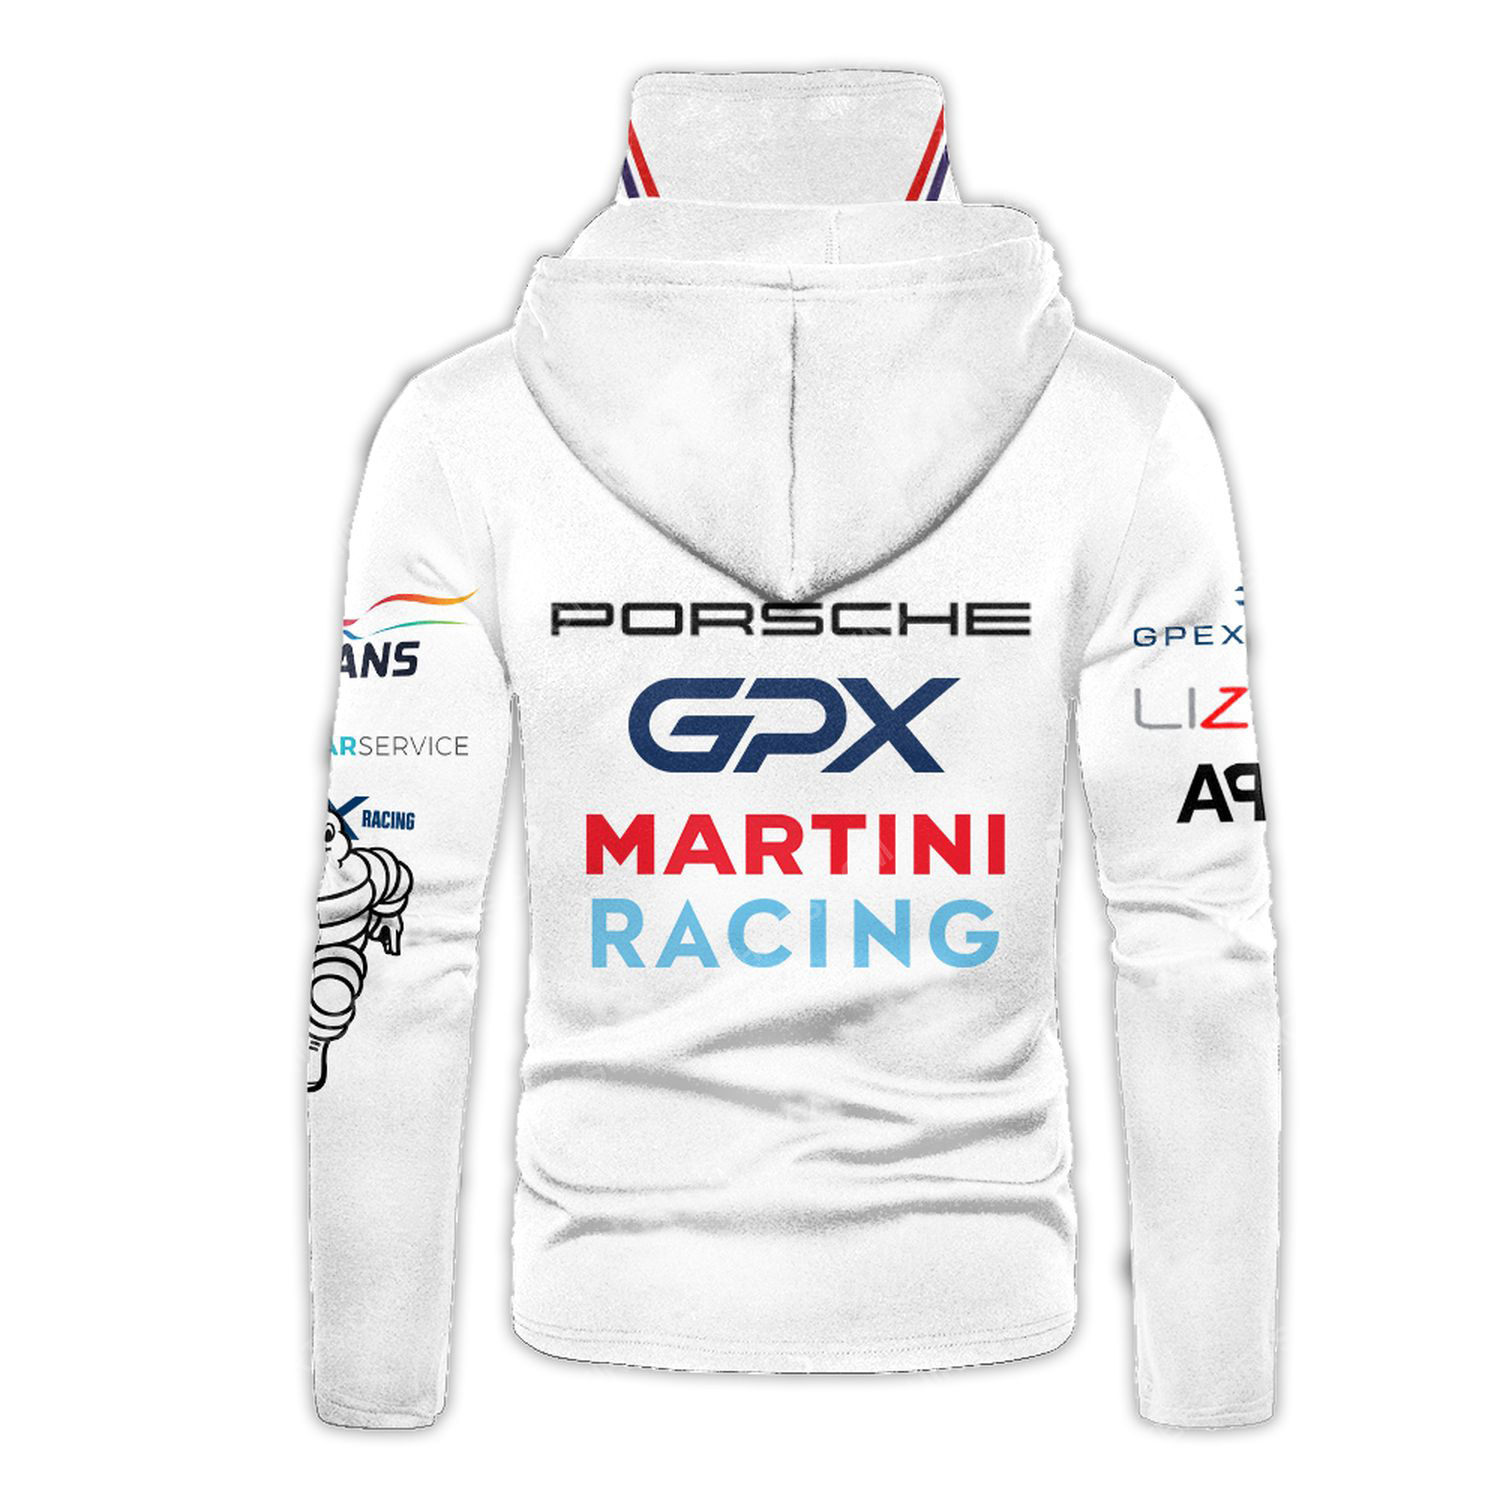 Custom porsche racing team motorsport full printing hoodie mask - back